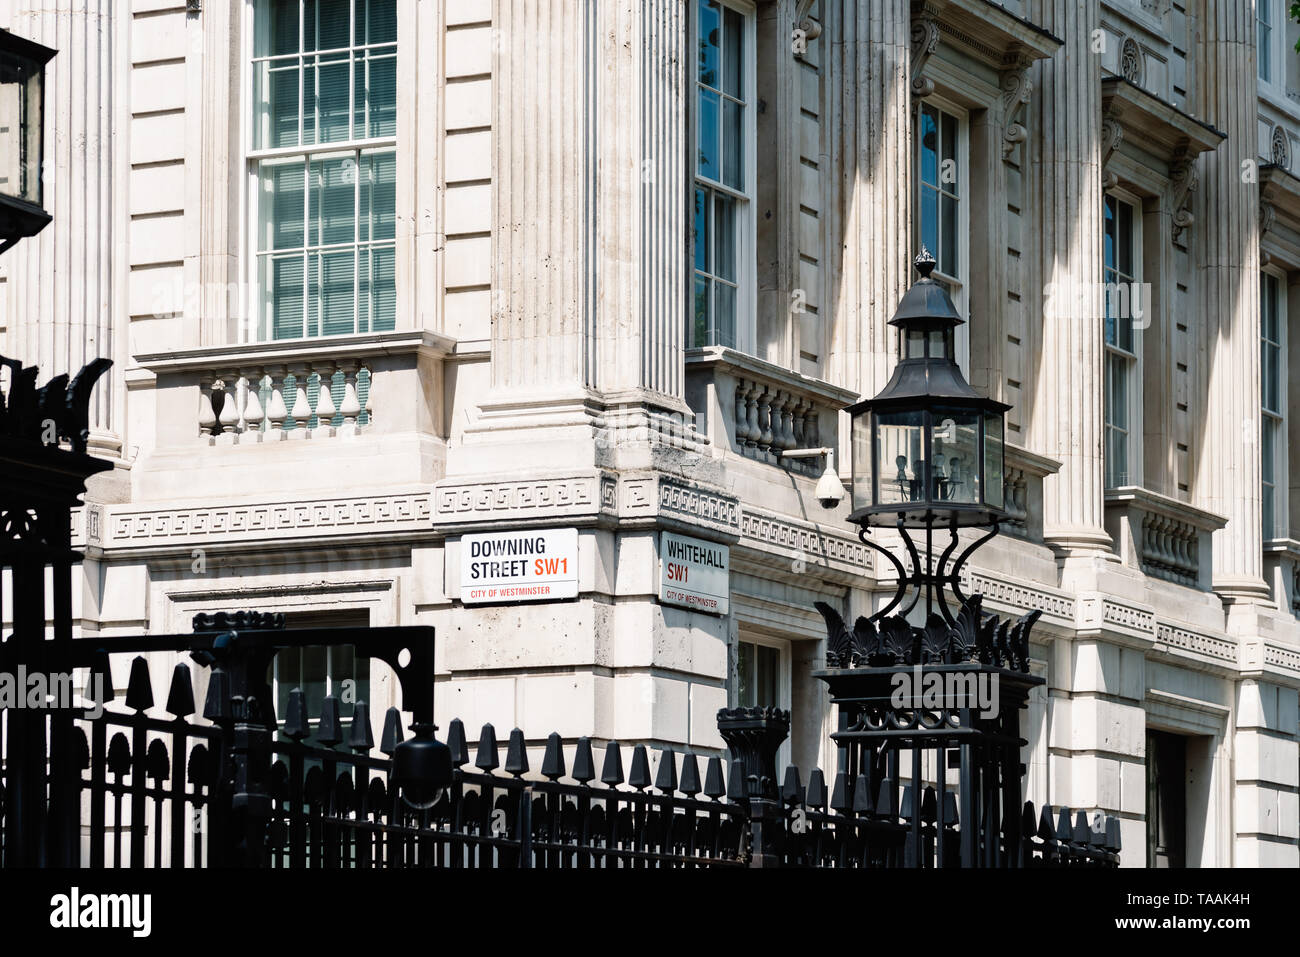 Londres, Reino Unido - 14 de mayo de 2019: los nombres de las calles signos Downing Street y Whitehall en la puerta del 10 de Downing Street, la residencia del Primer Ministro de la U Foto de stock